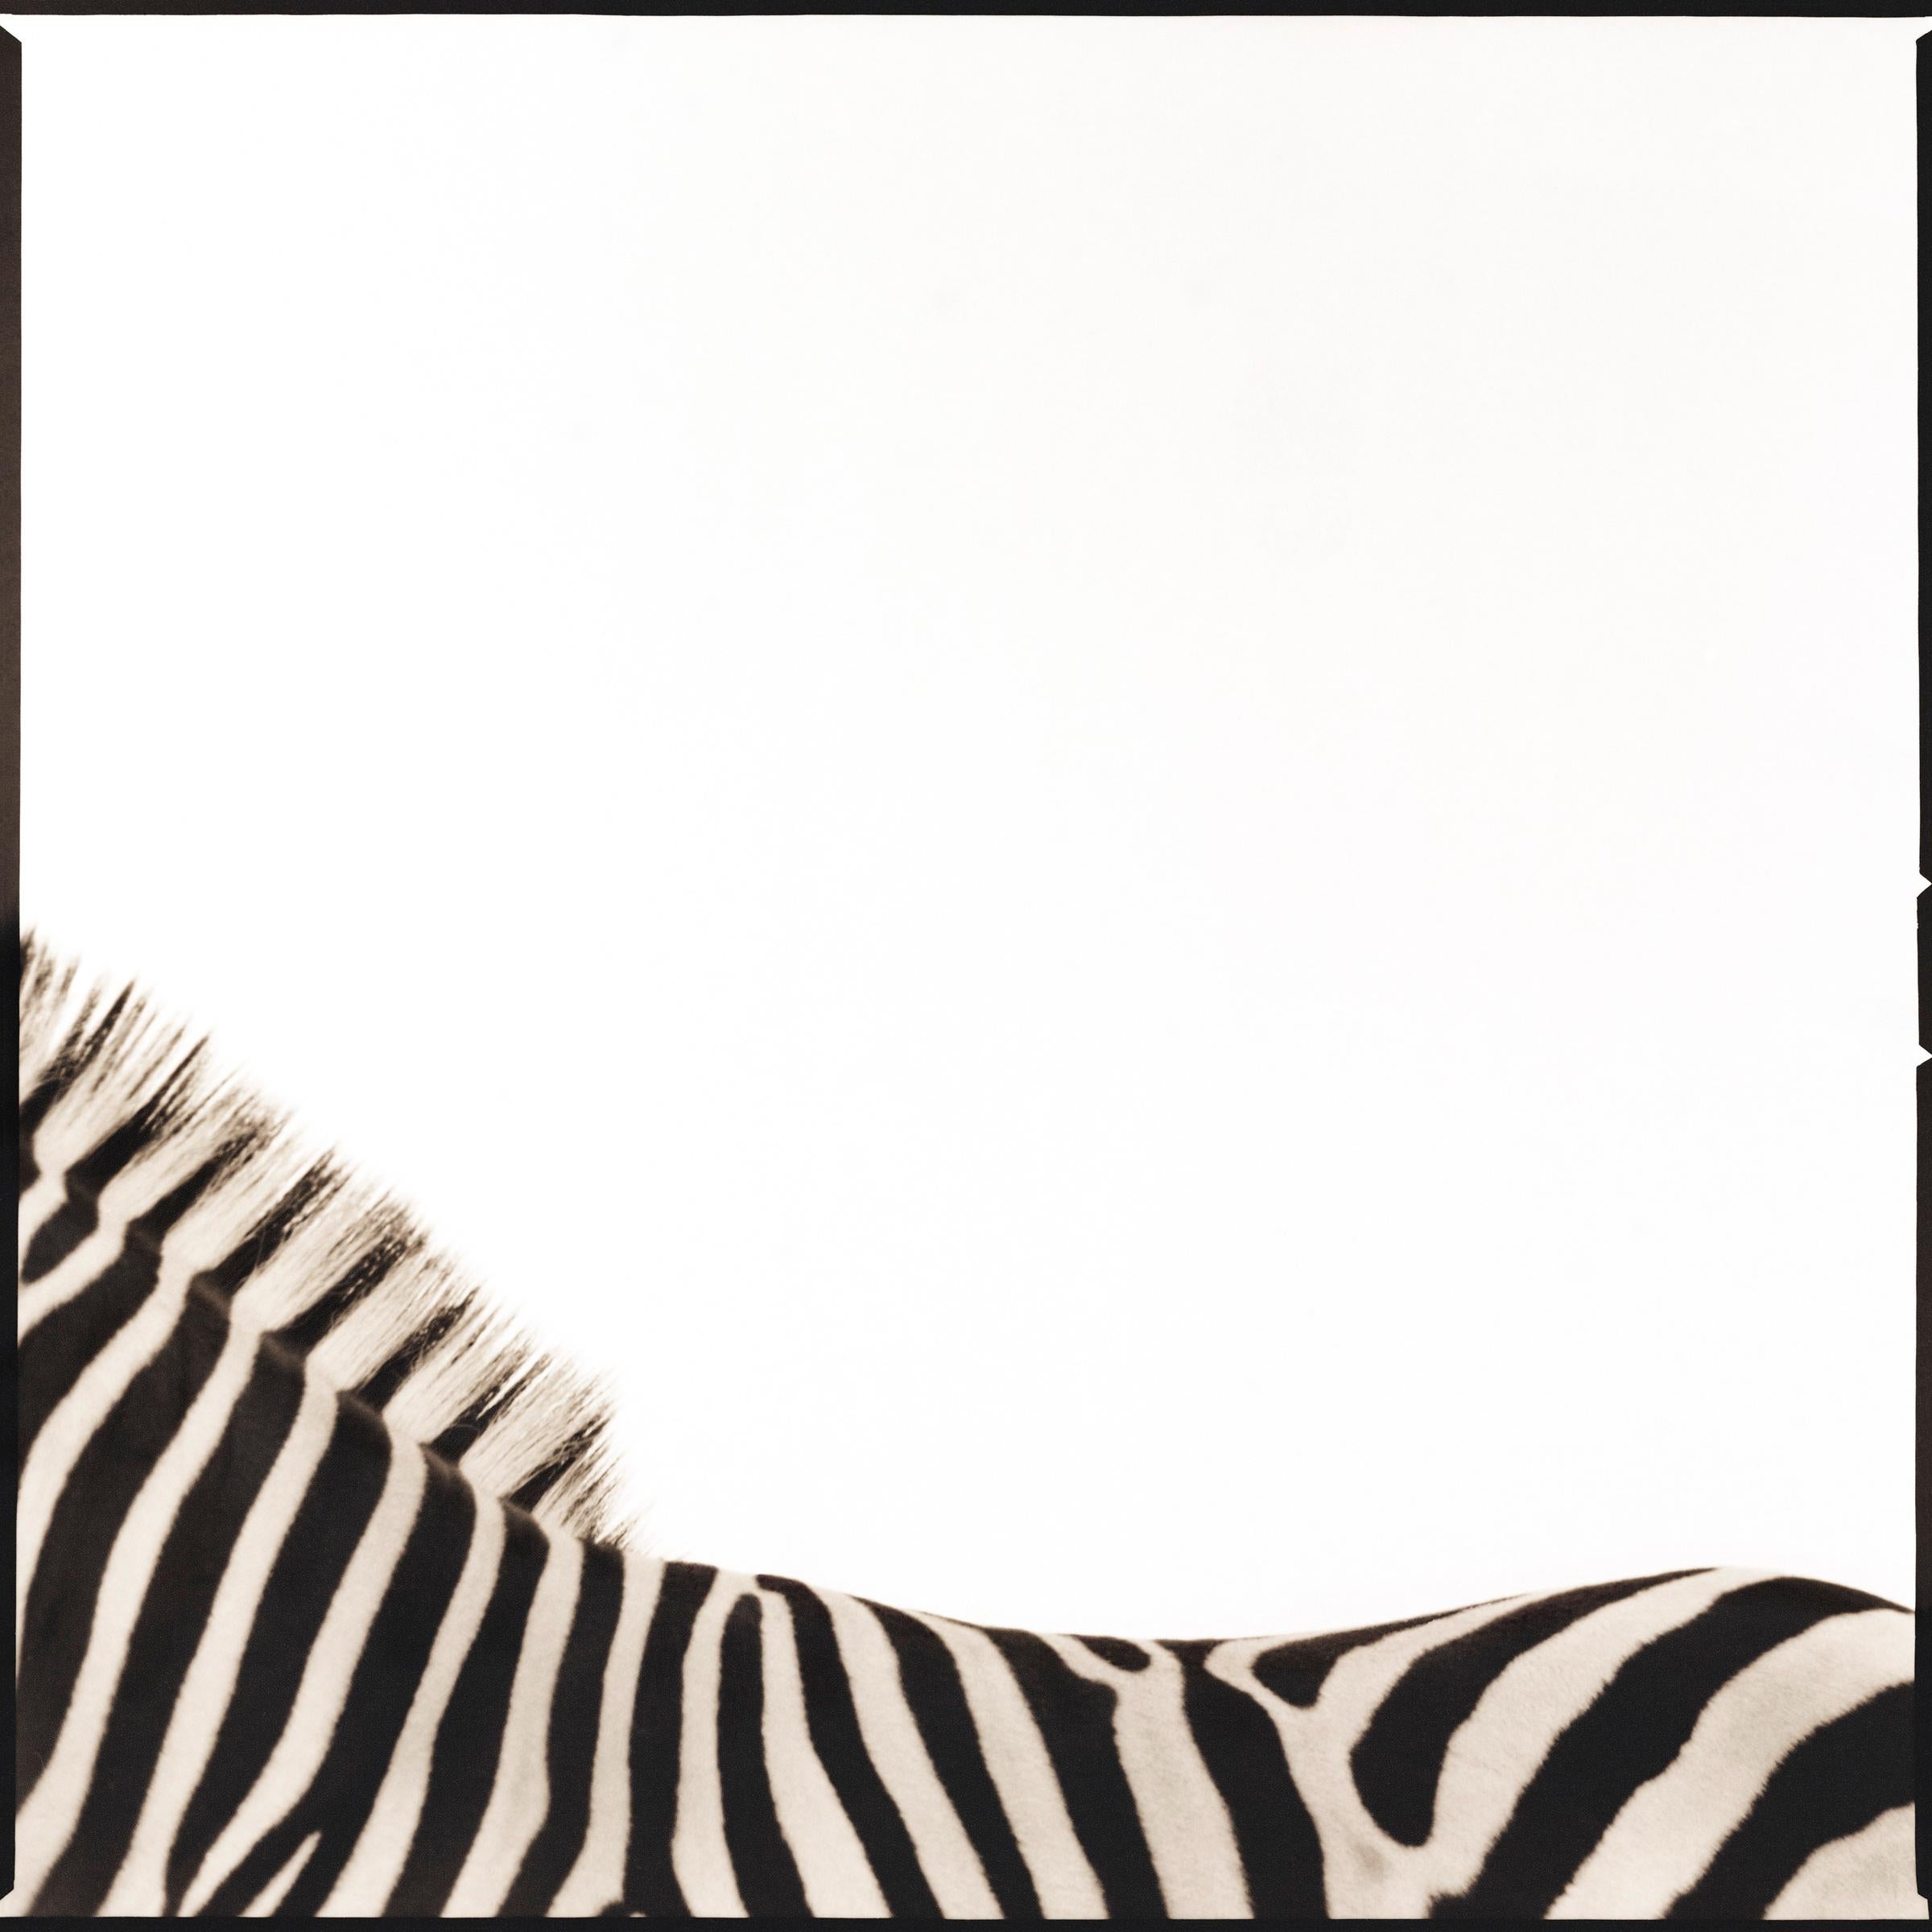 Zebra I (1/50) - Photograph by Nine Francois